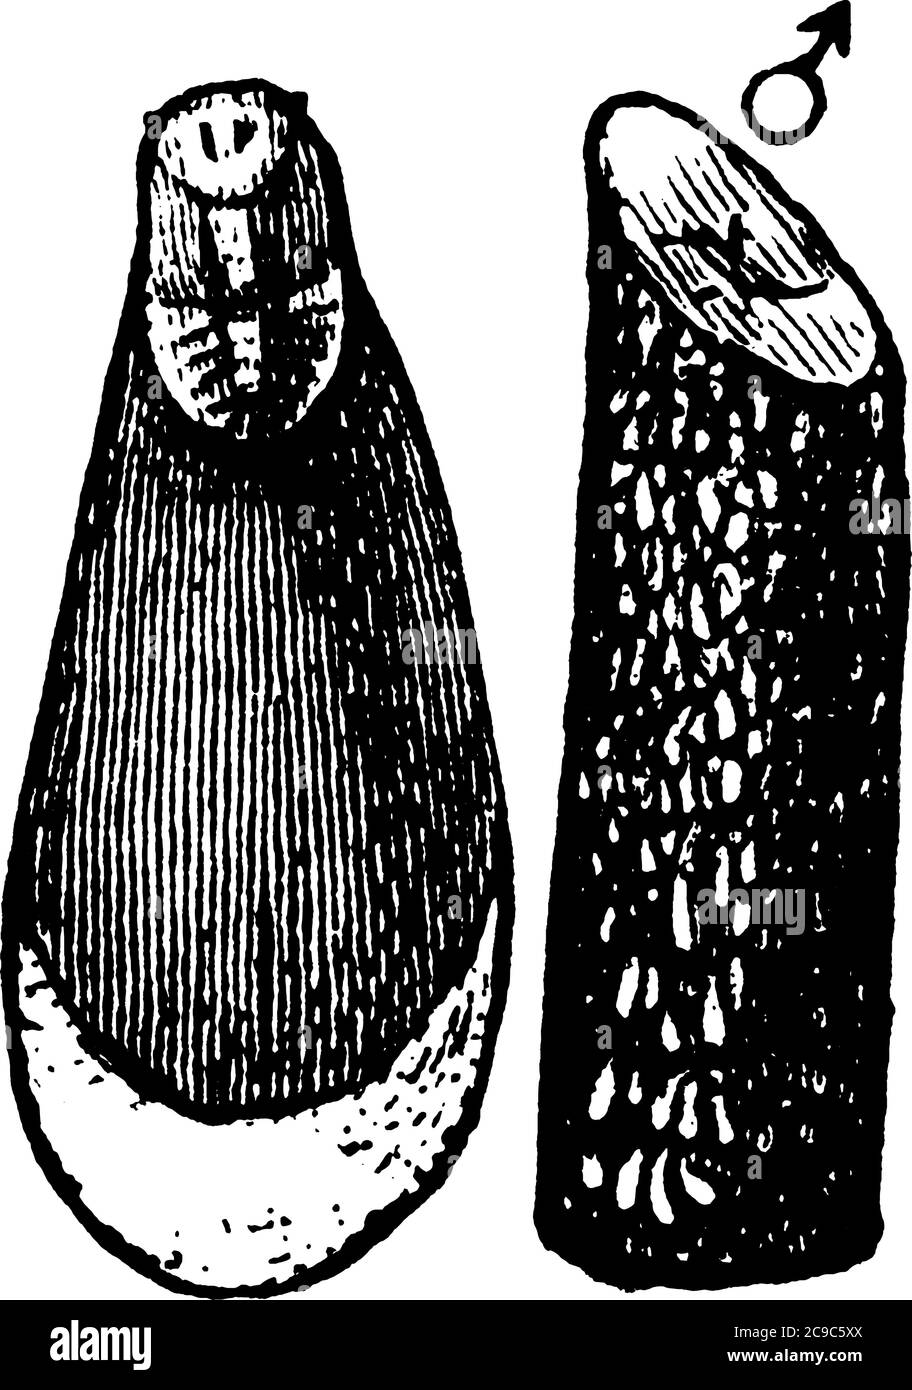 Austernmuschel-Skala der Mytilaspis Pomorum-Art; Bild mit männlicher Skala und einem damit befallenen Zweig., Vintage-Linienzeichnung oder Gravur illustraa Stock Vektor